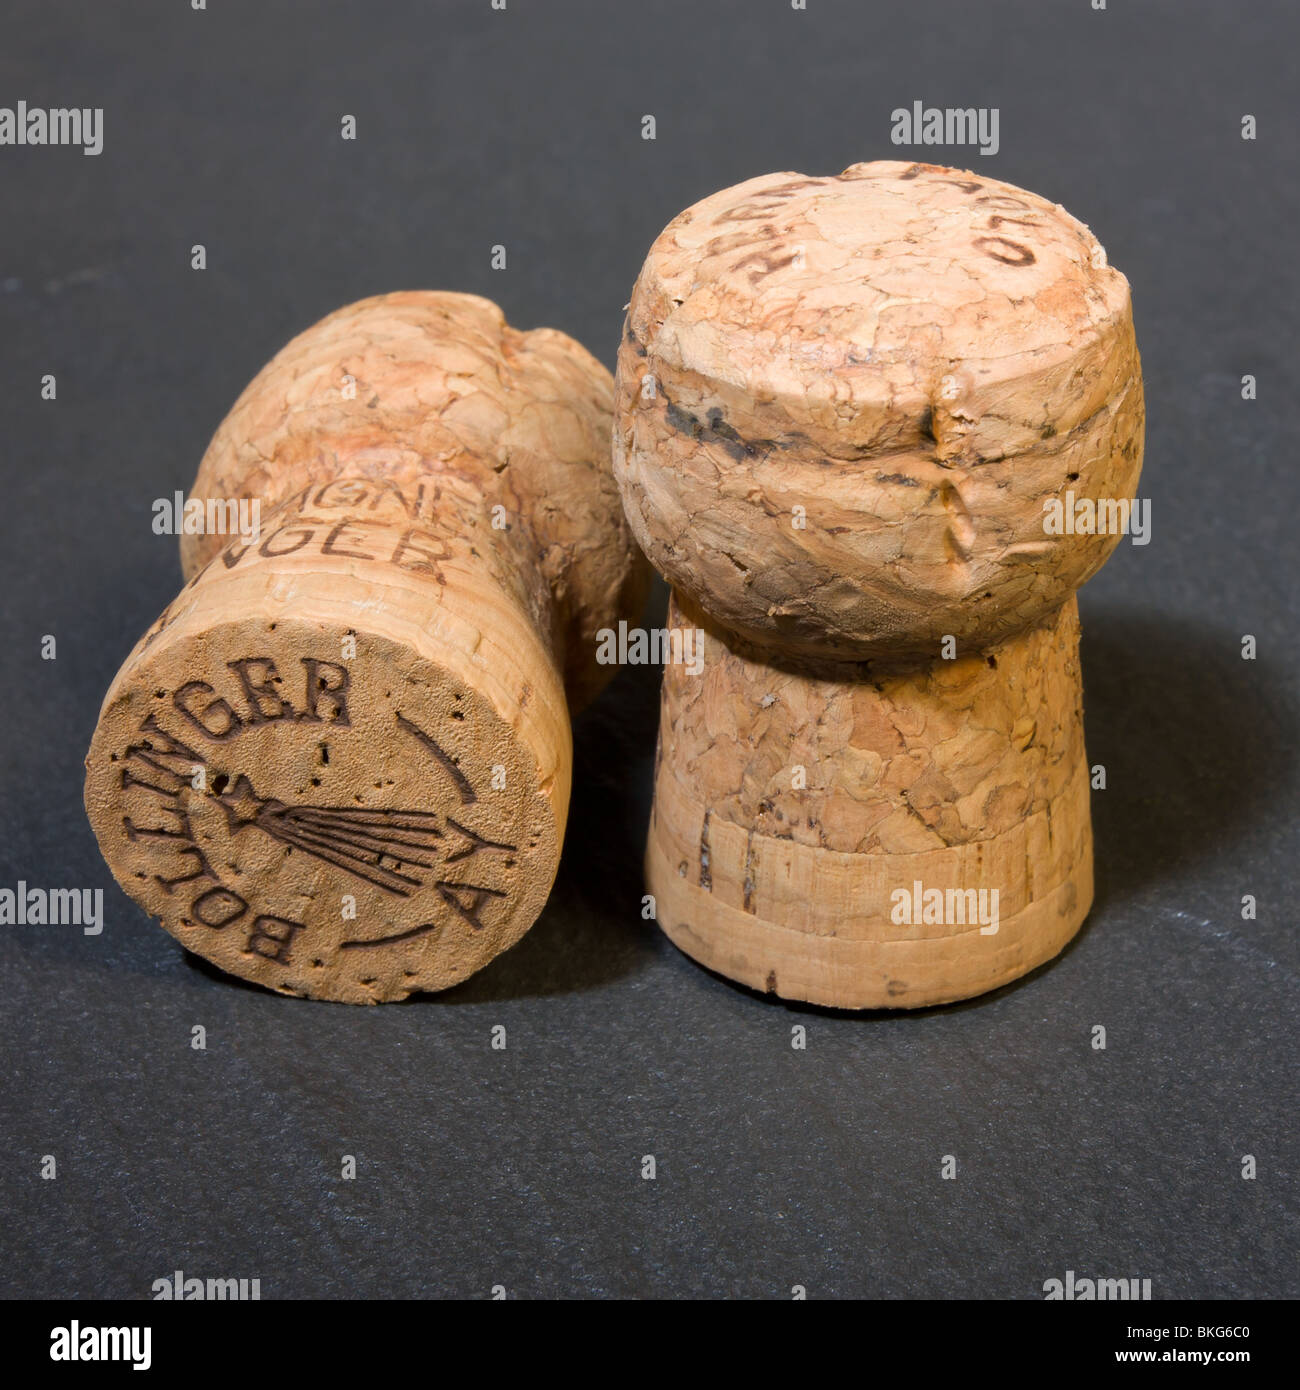 Bollinger Vintage Champagne Corks on dark slate background Stock Photo